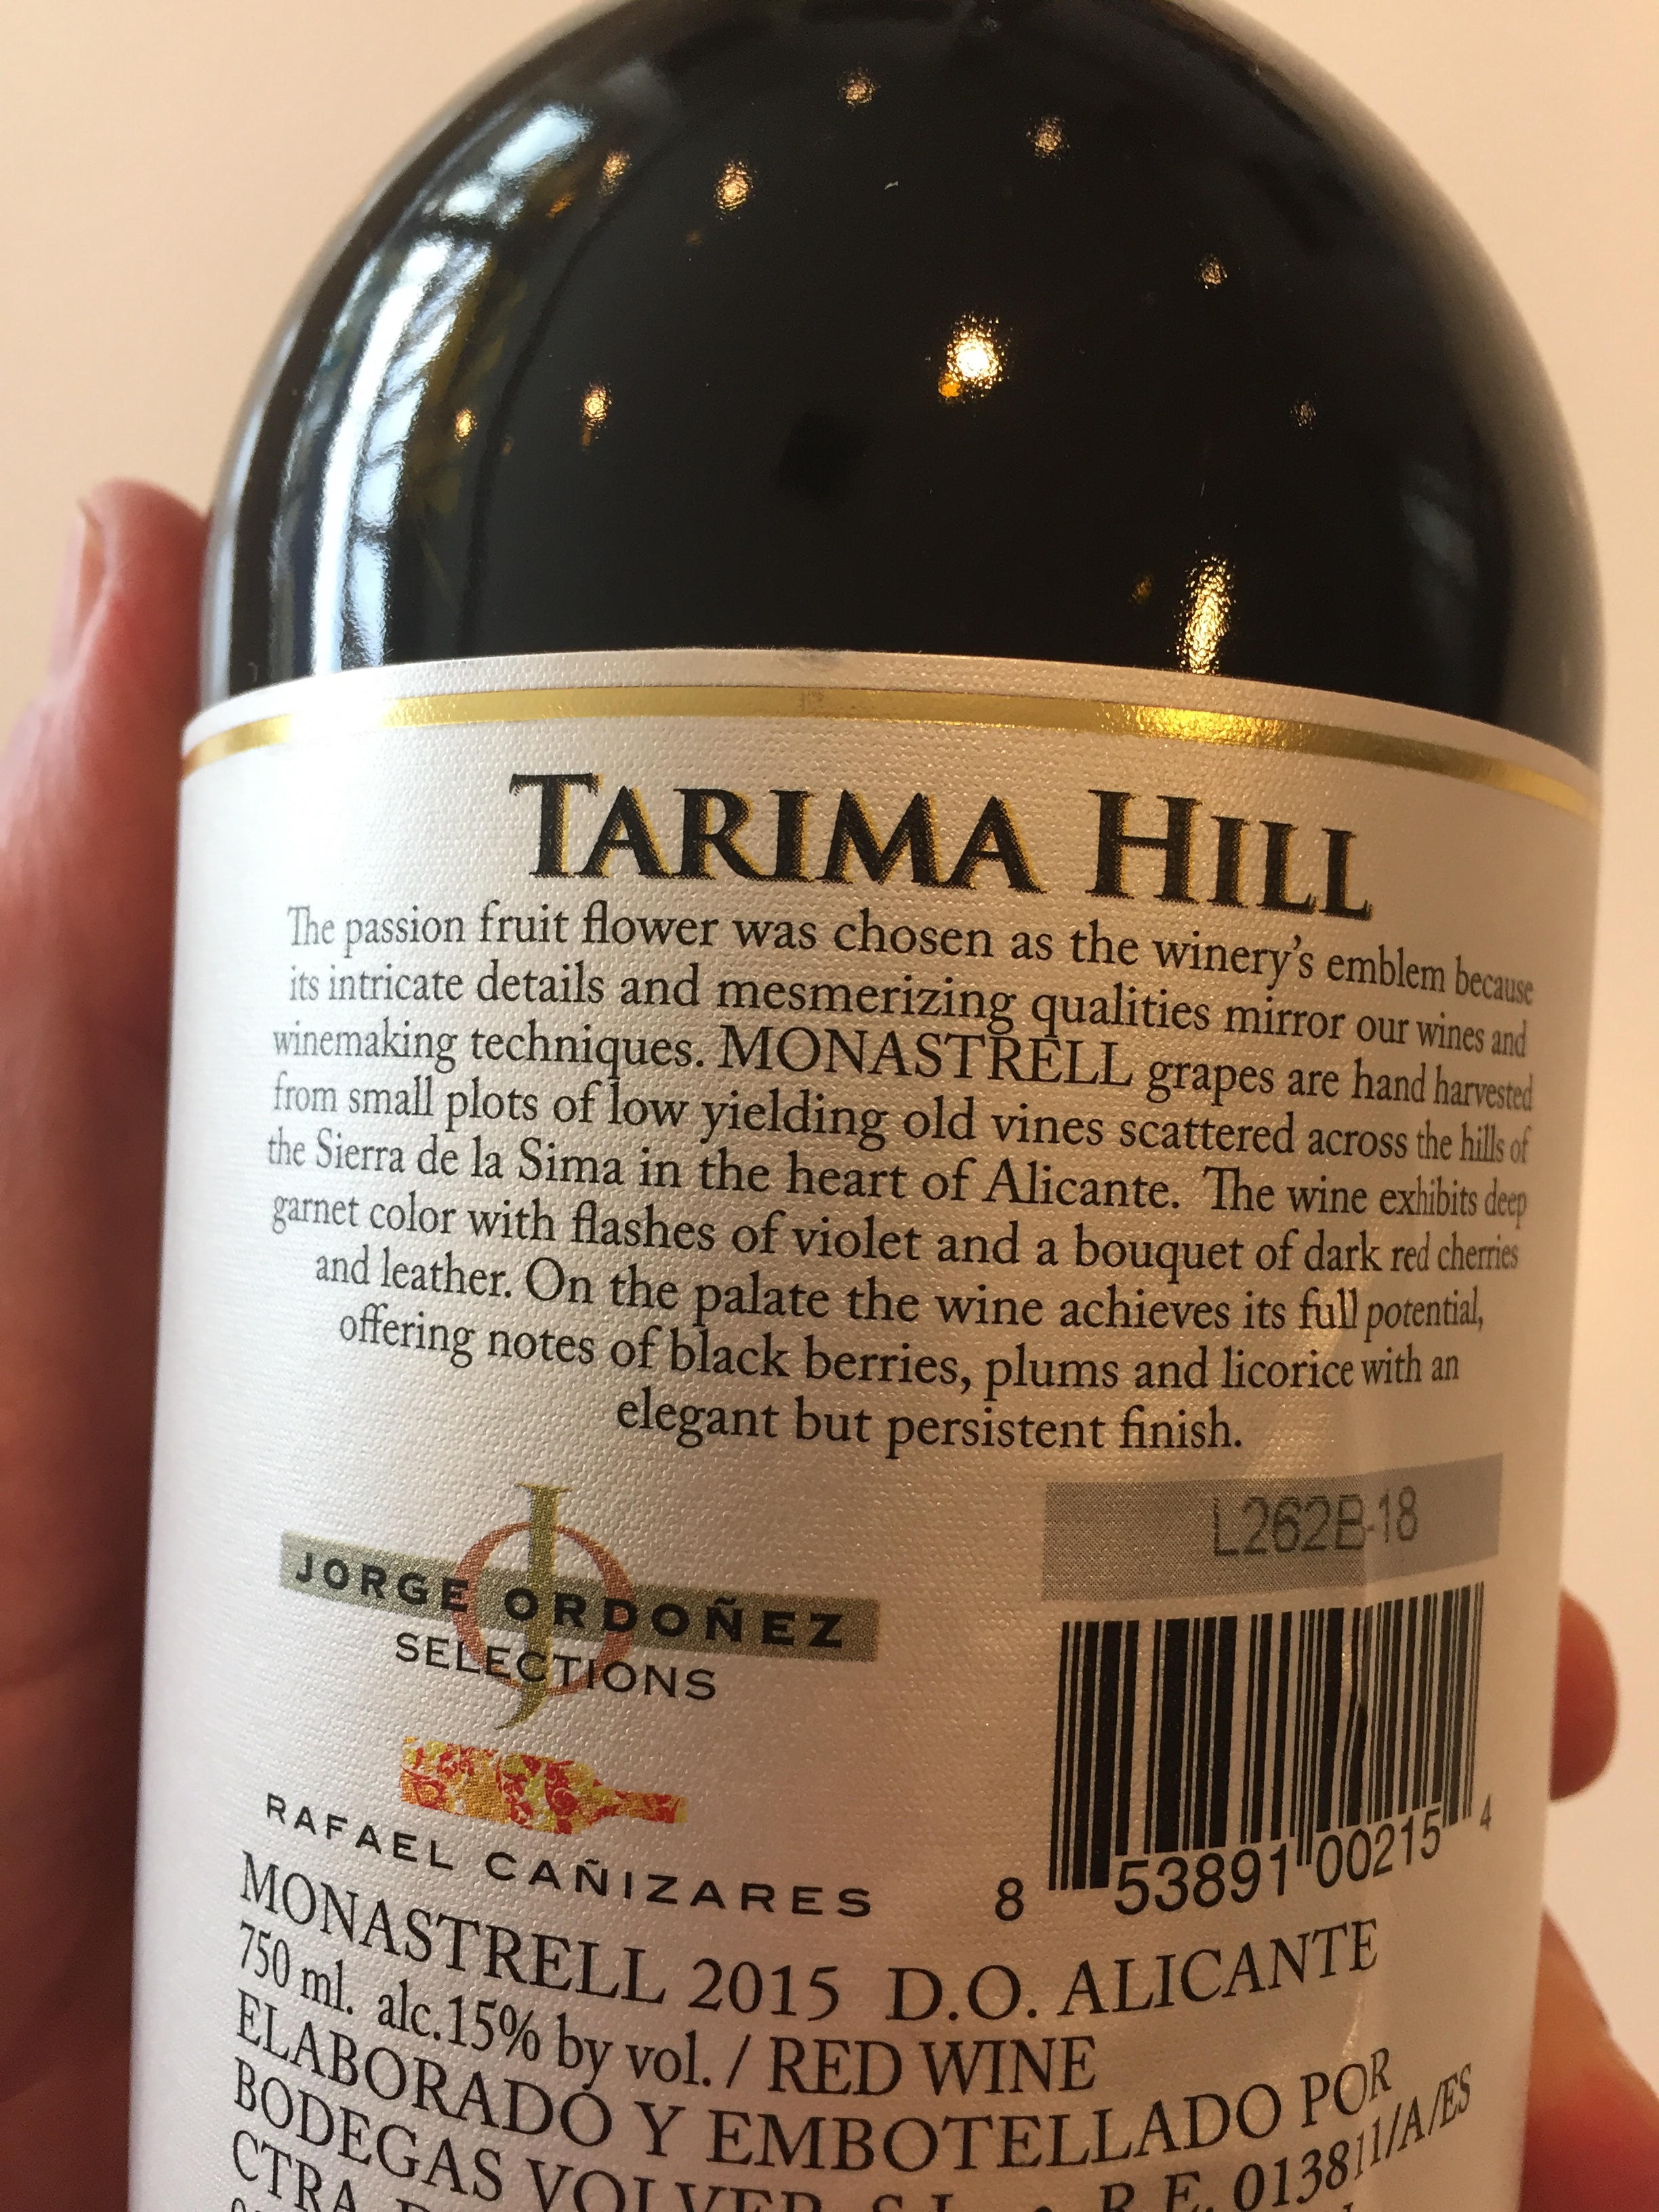 2015 Tarima Hill Monastrell, Alicante, Spain Label